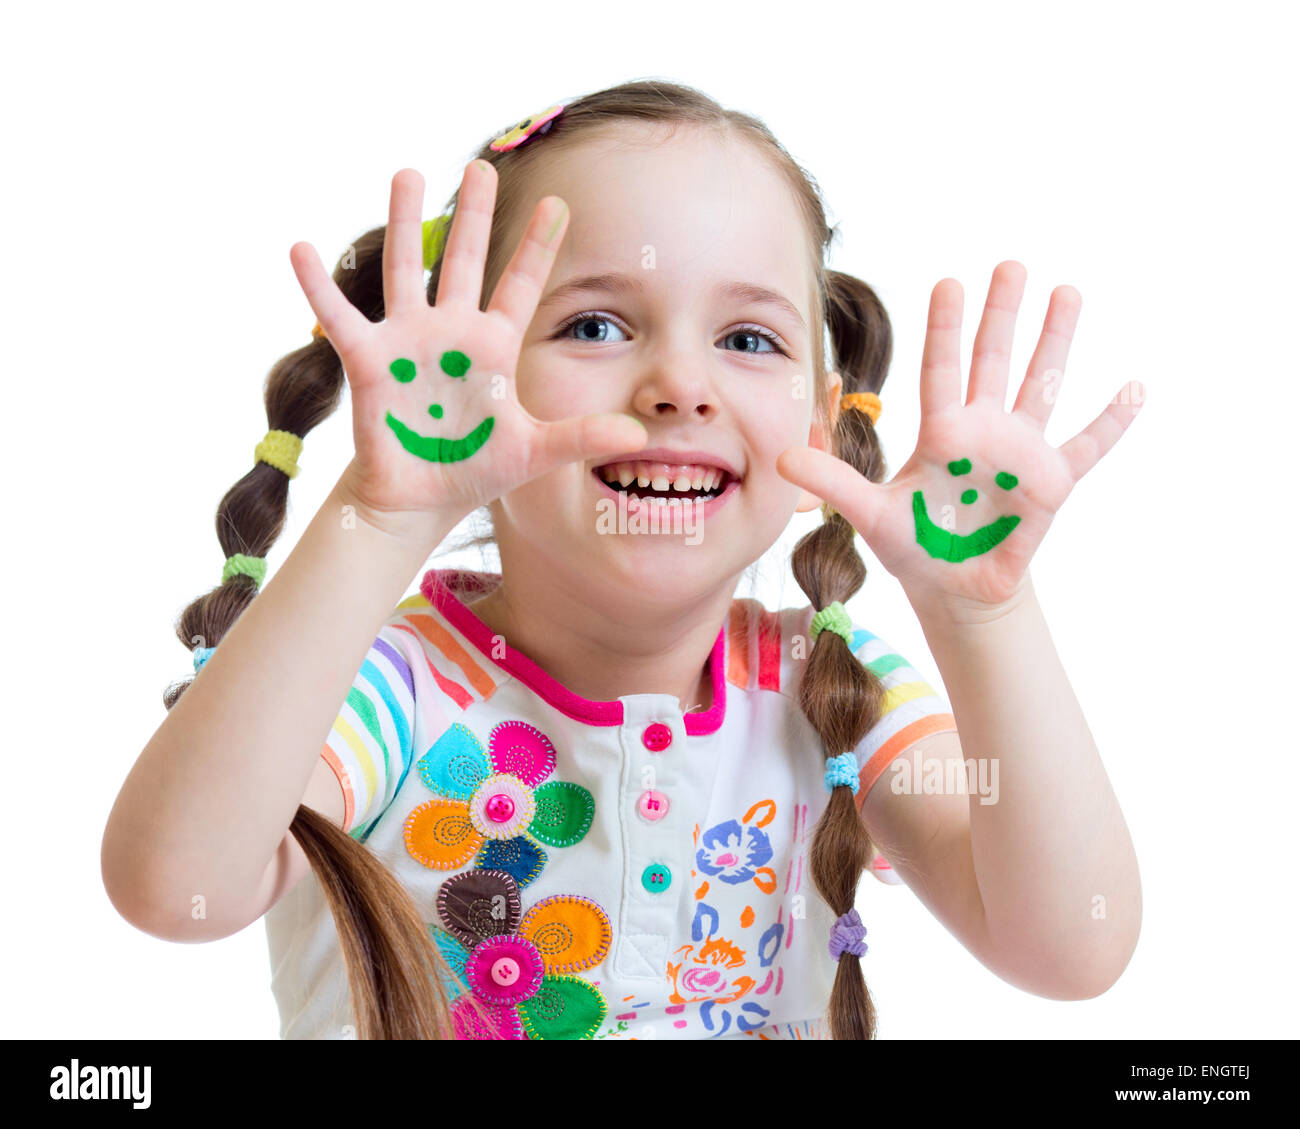 Petite fille montrant les mains peintes avec drôle de visage isolé Banque D'Images